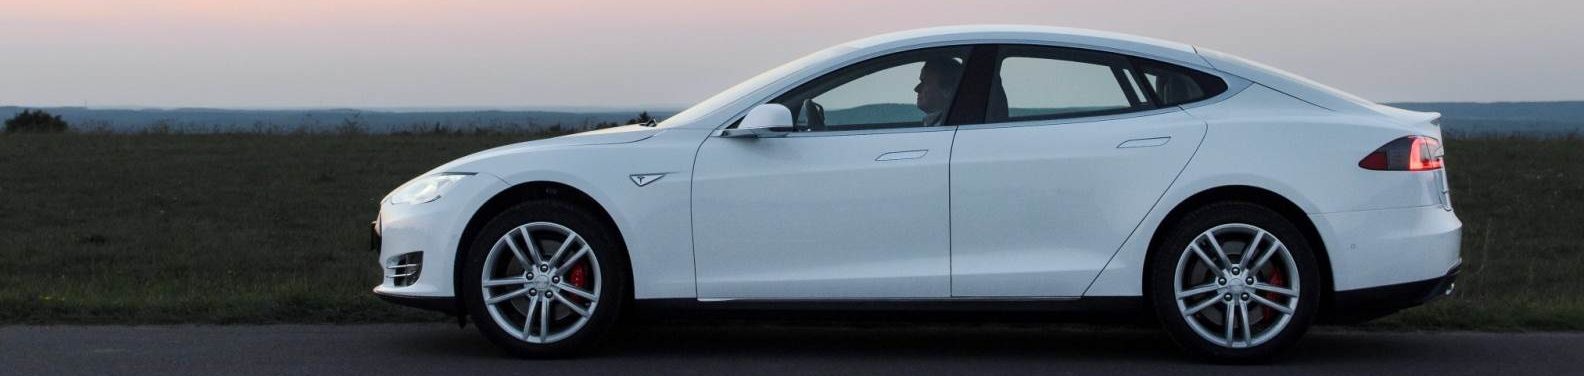 Mietwagen Tesla Model S Limousine mit 700PS zu vermieten